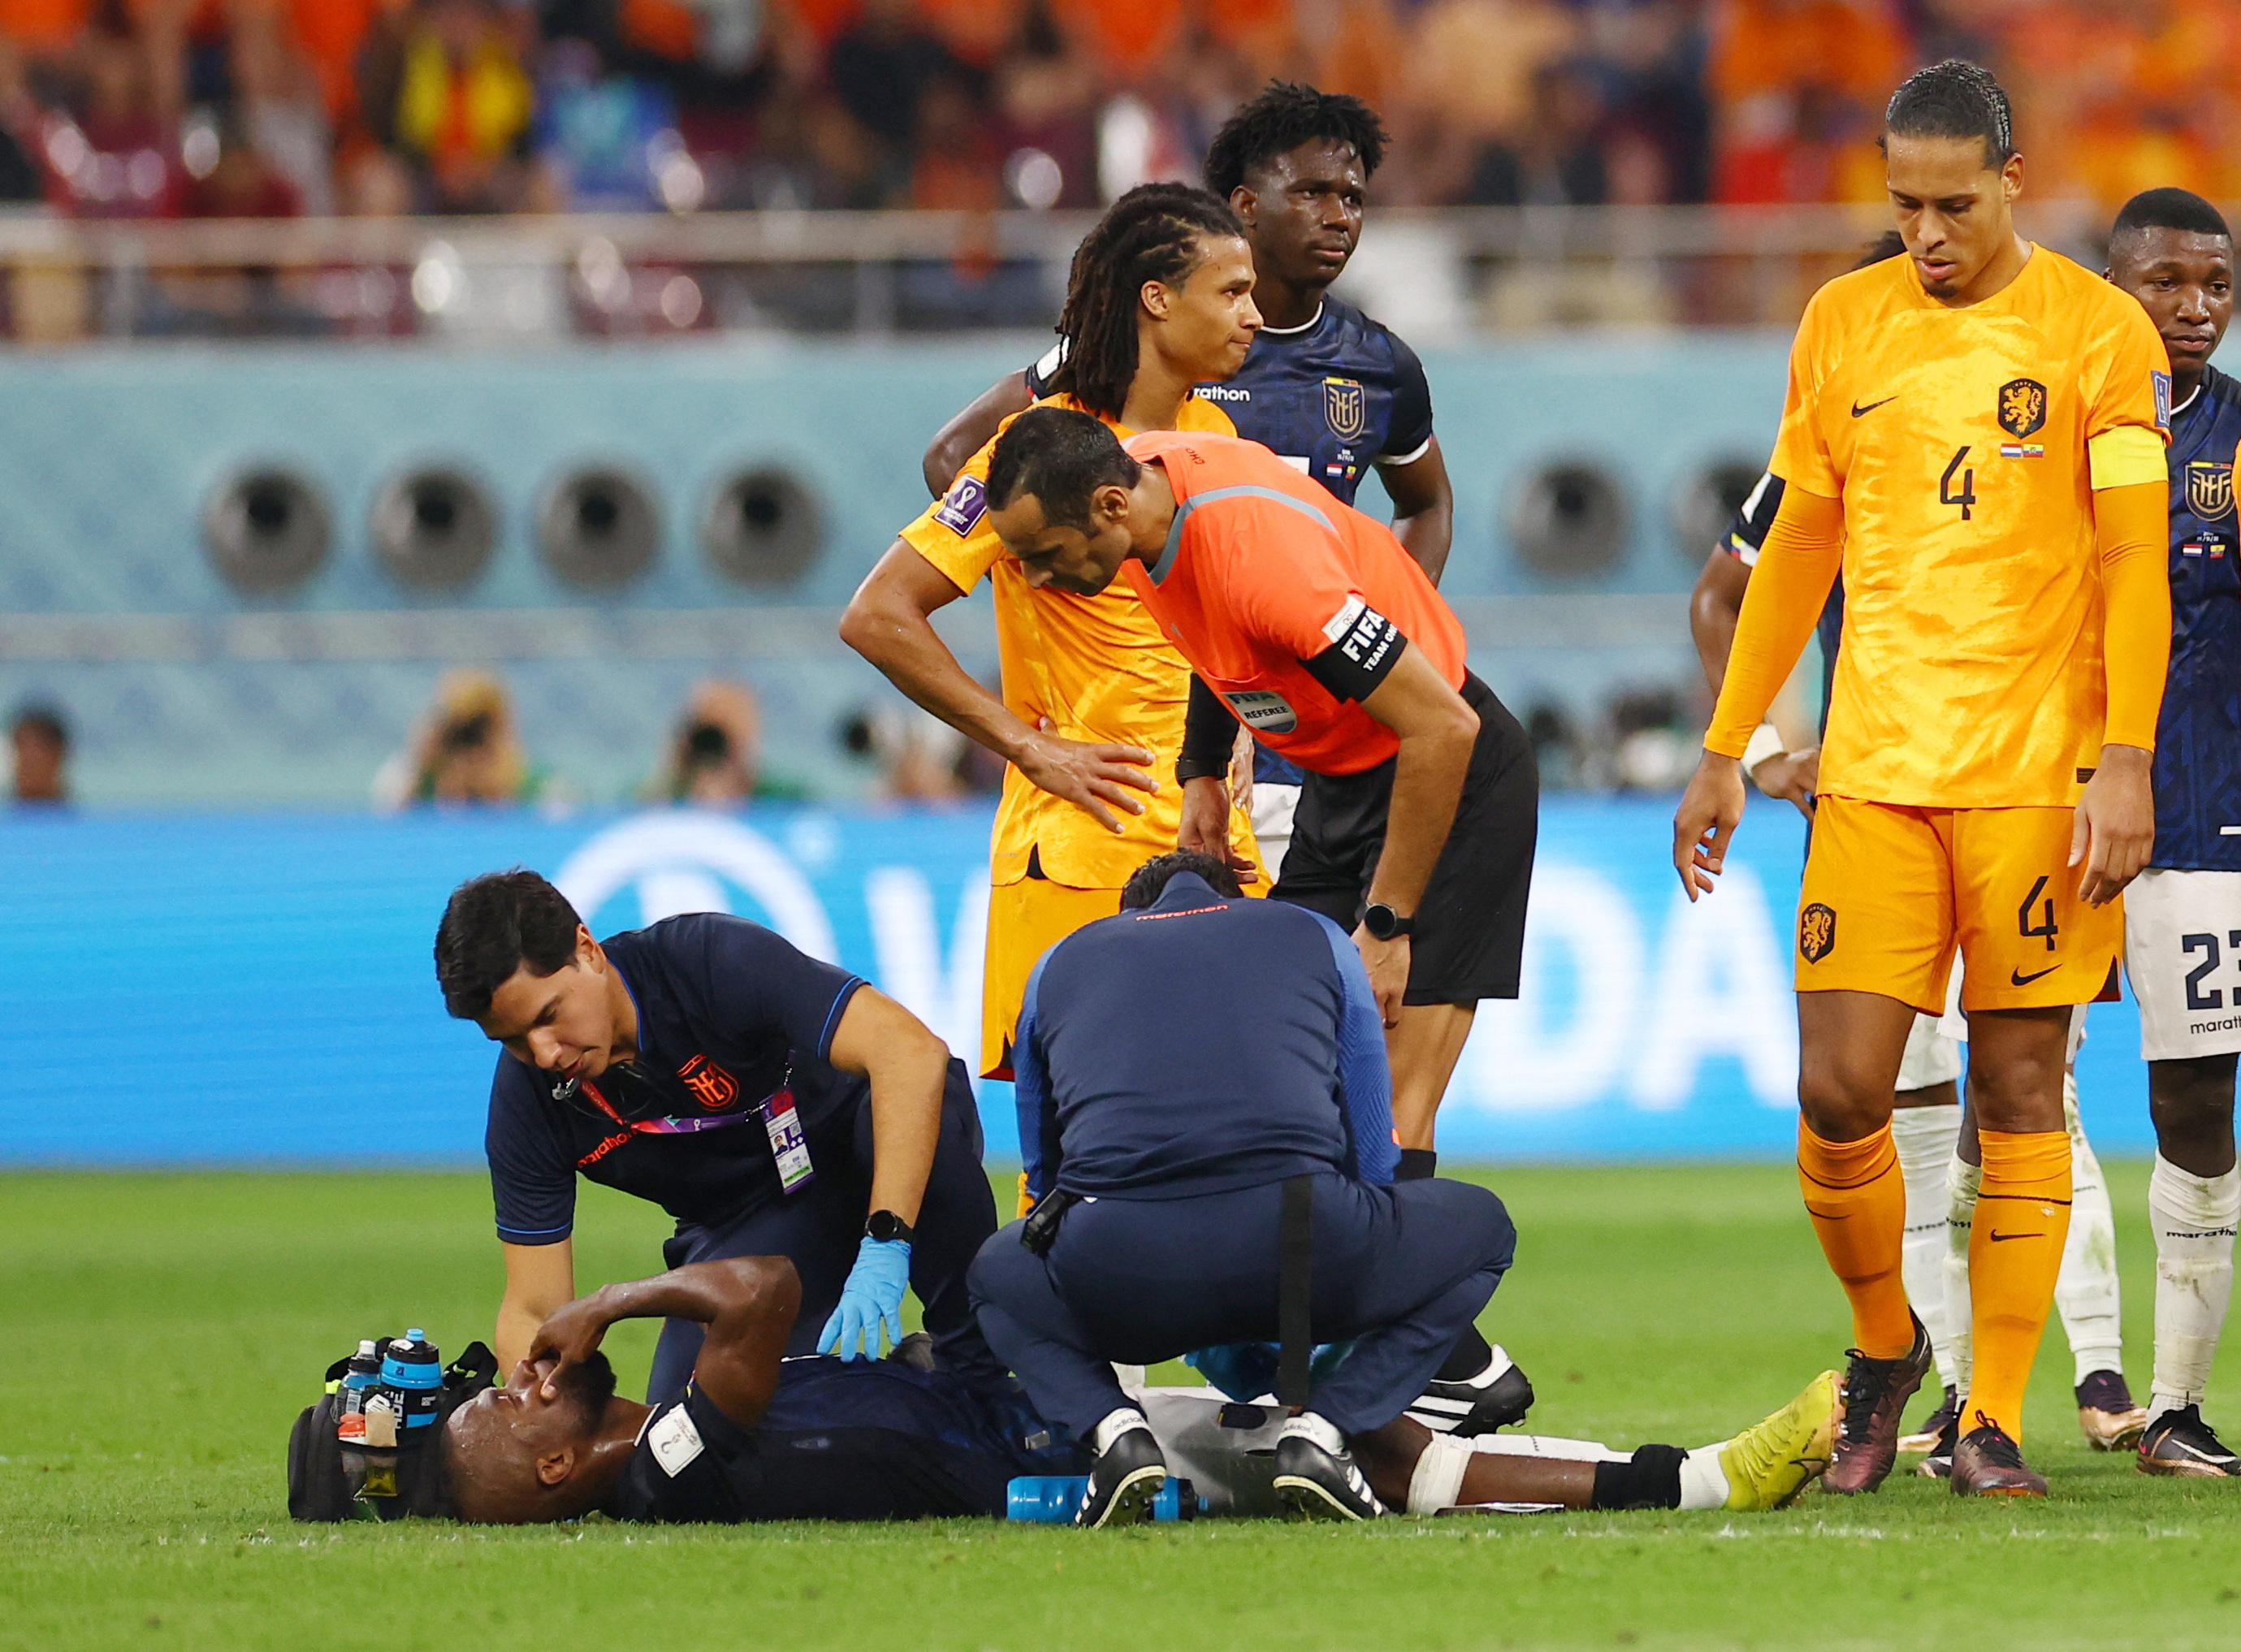 Un esguince leve le habría impedido terminar el partido ante Holanda. En ese encuentro, Ecuador empató ante Países Bajos. (REUTERS/Siphiwe Sibeko)